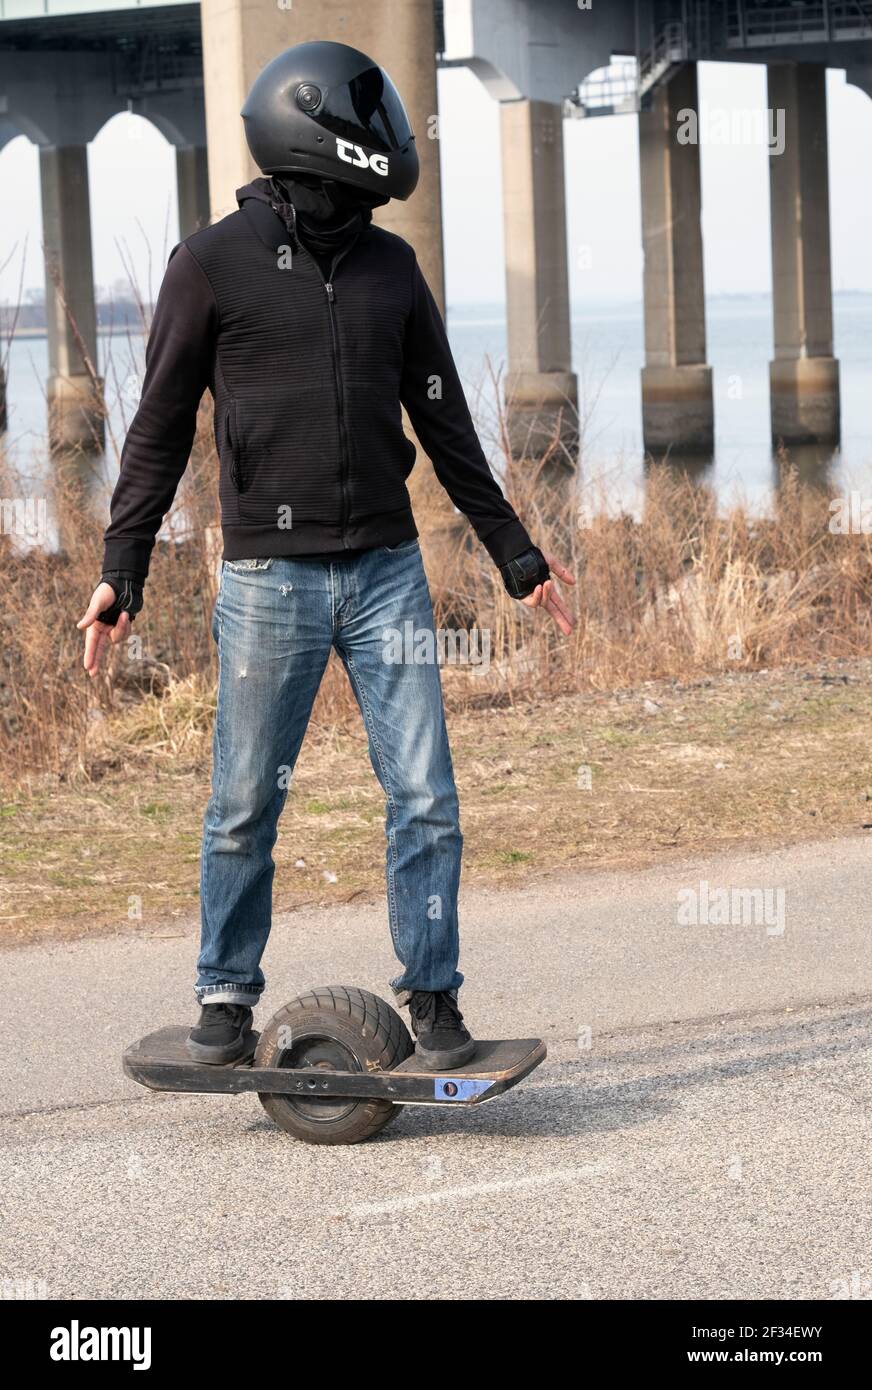 Ein junger Mann auf einem ONEWHEEL, einem selbstbalancierenden Einrad- Elektro-Board-Sport, Freizeit-Personal-Transporter, beschrieben als ein  elektrisches Skateboard Stockfotografie - Alamy